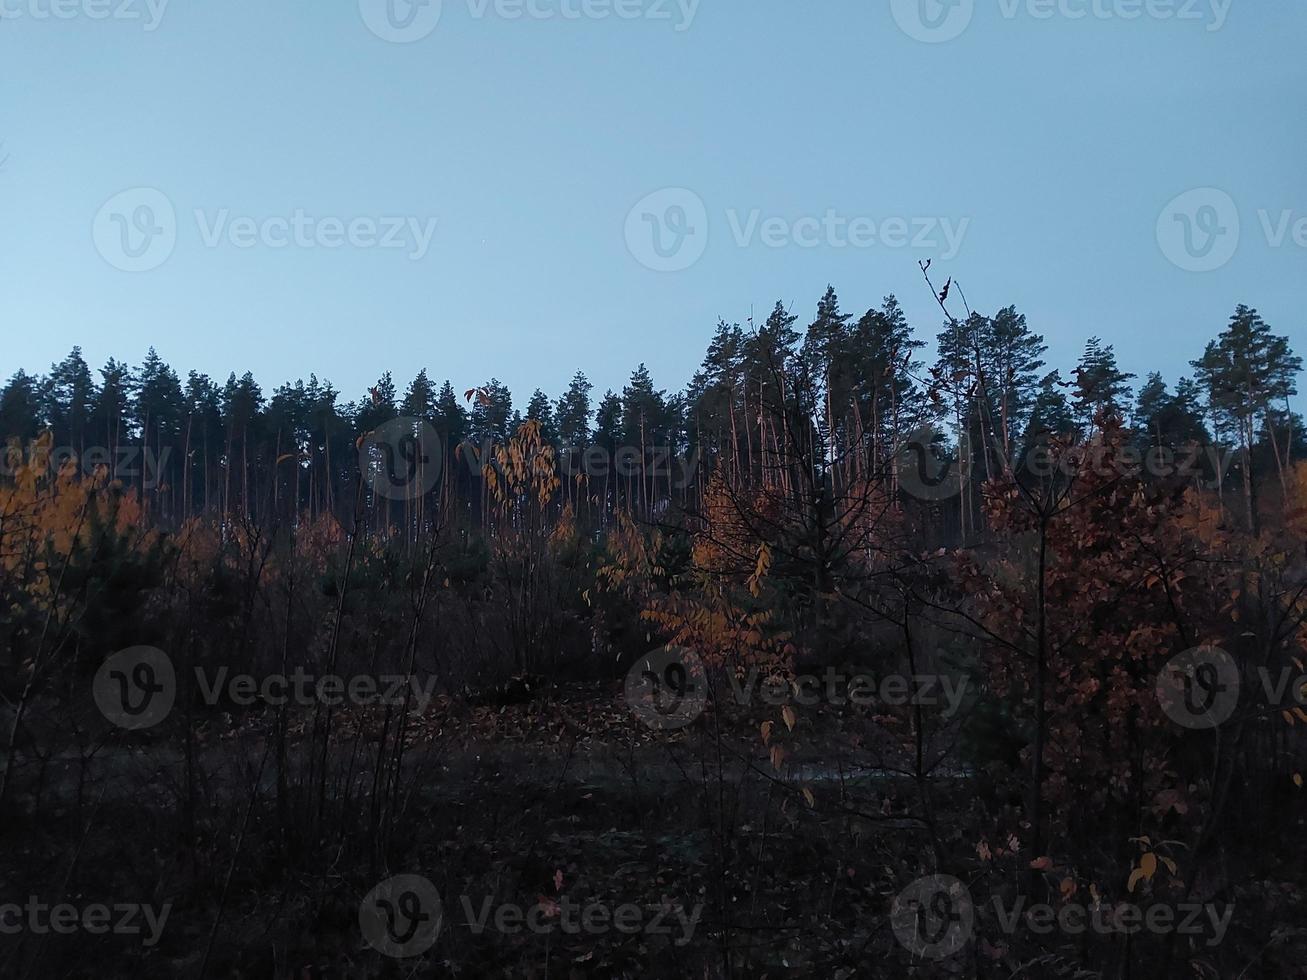 morgon- och natt panorama av gryning foto